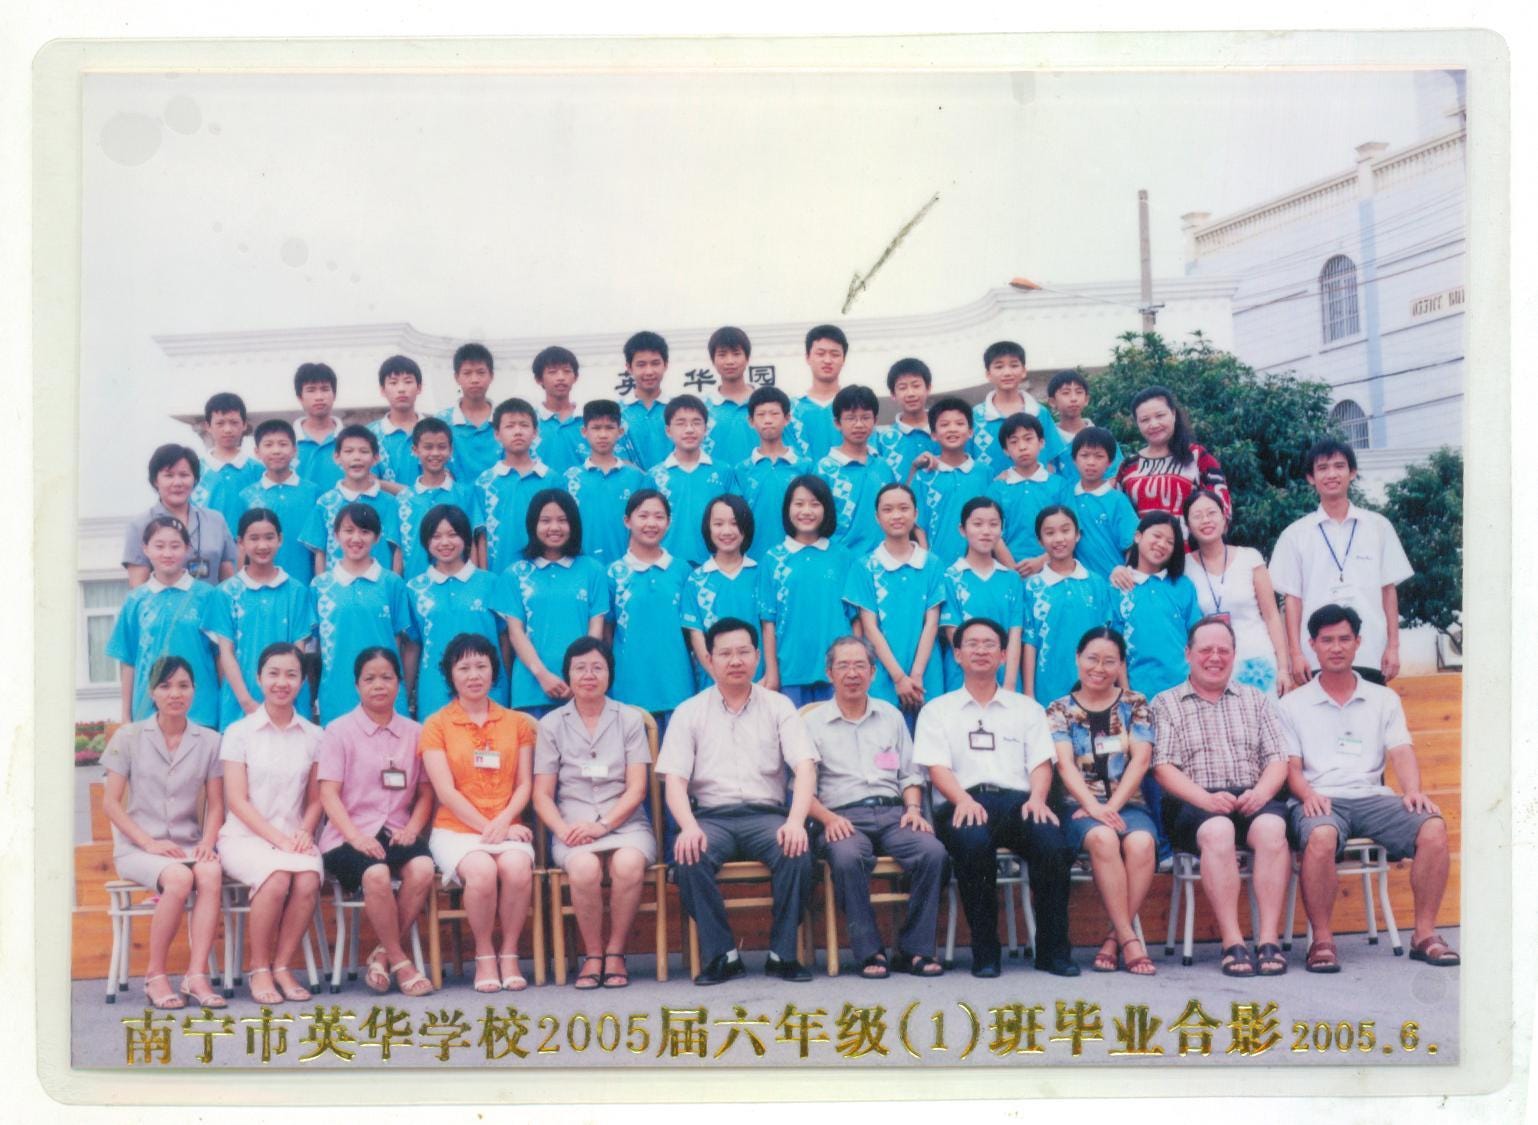 yinghua-school-class-photo-141179673603